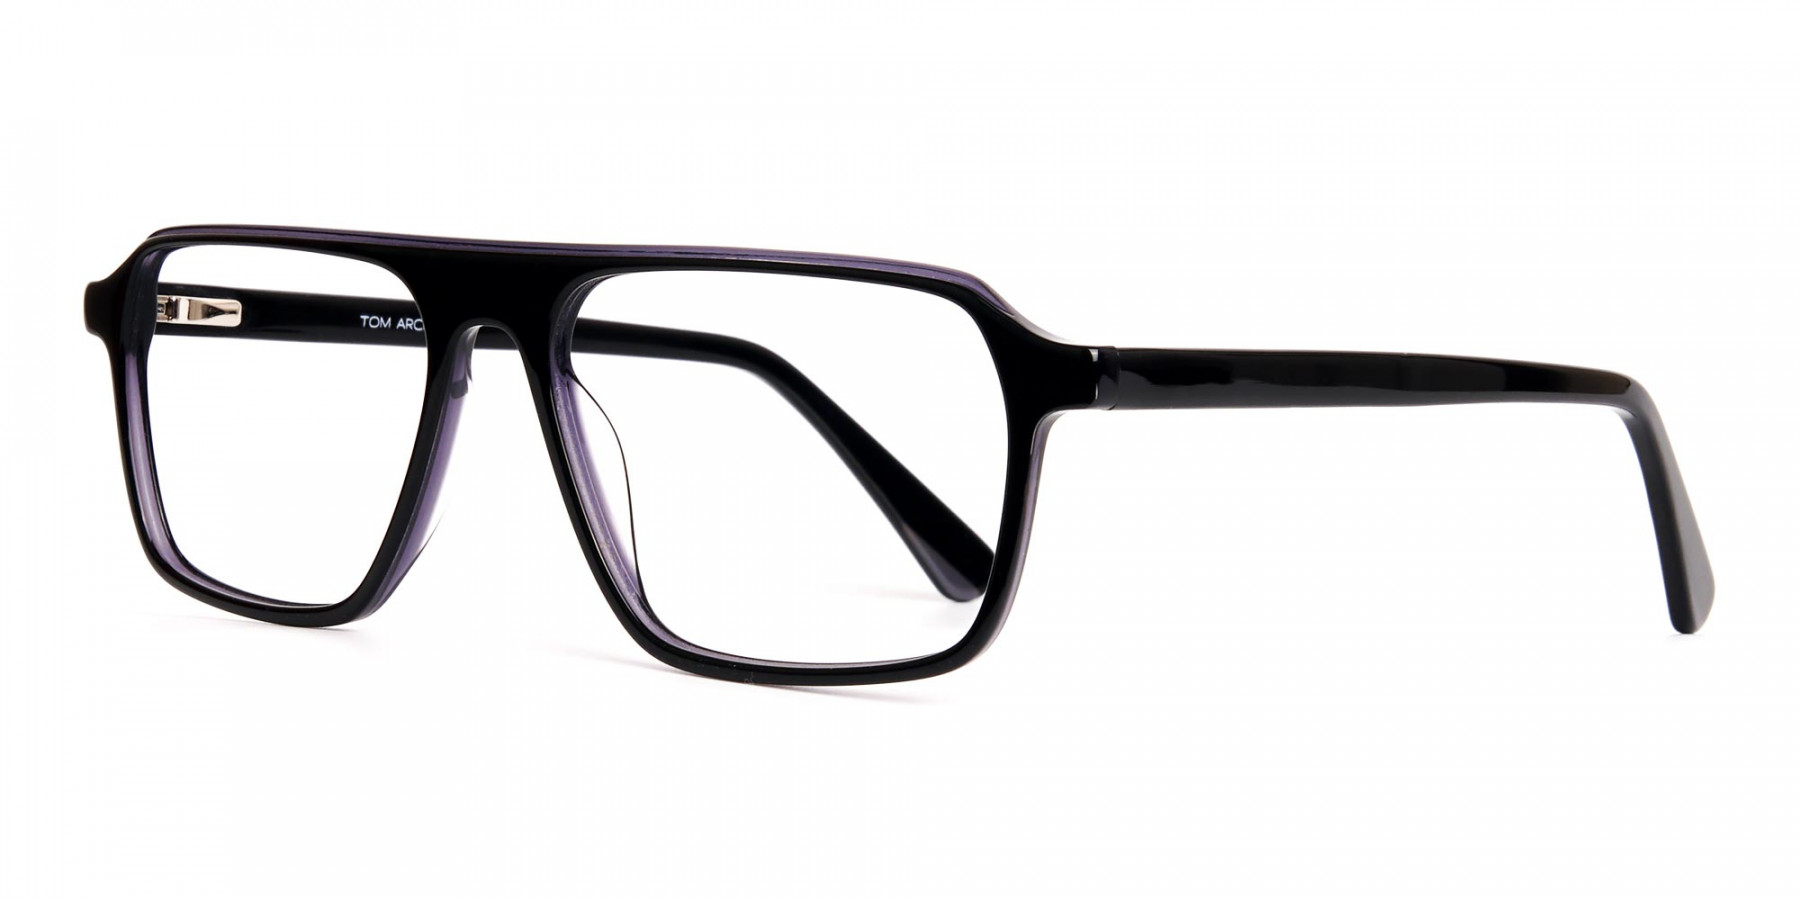 Black-and-Grey-Rectangular-Full-Rim-Glasses-frames-1